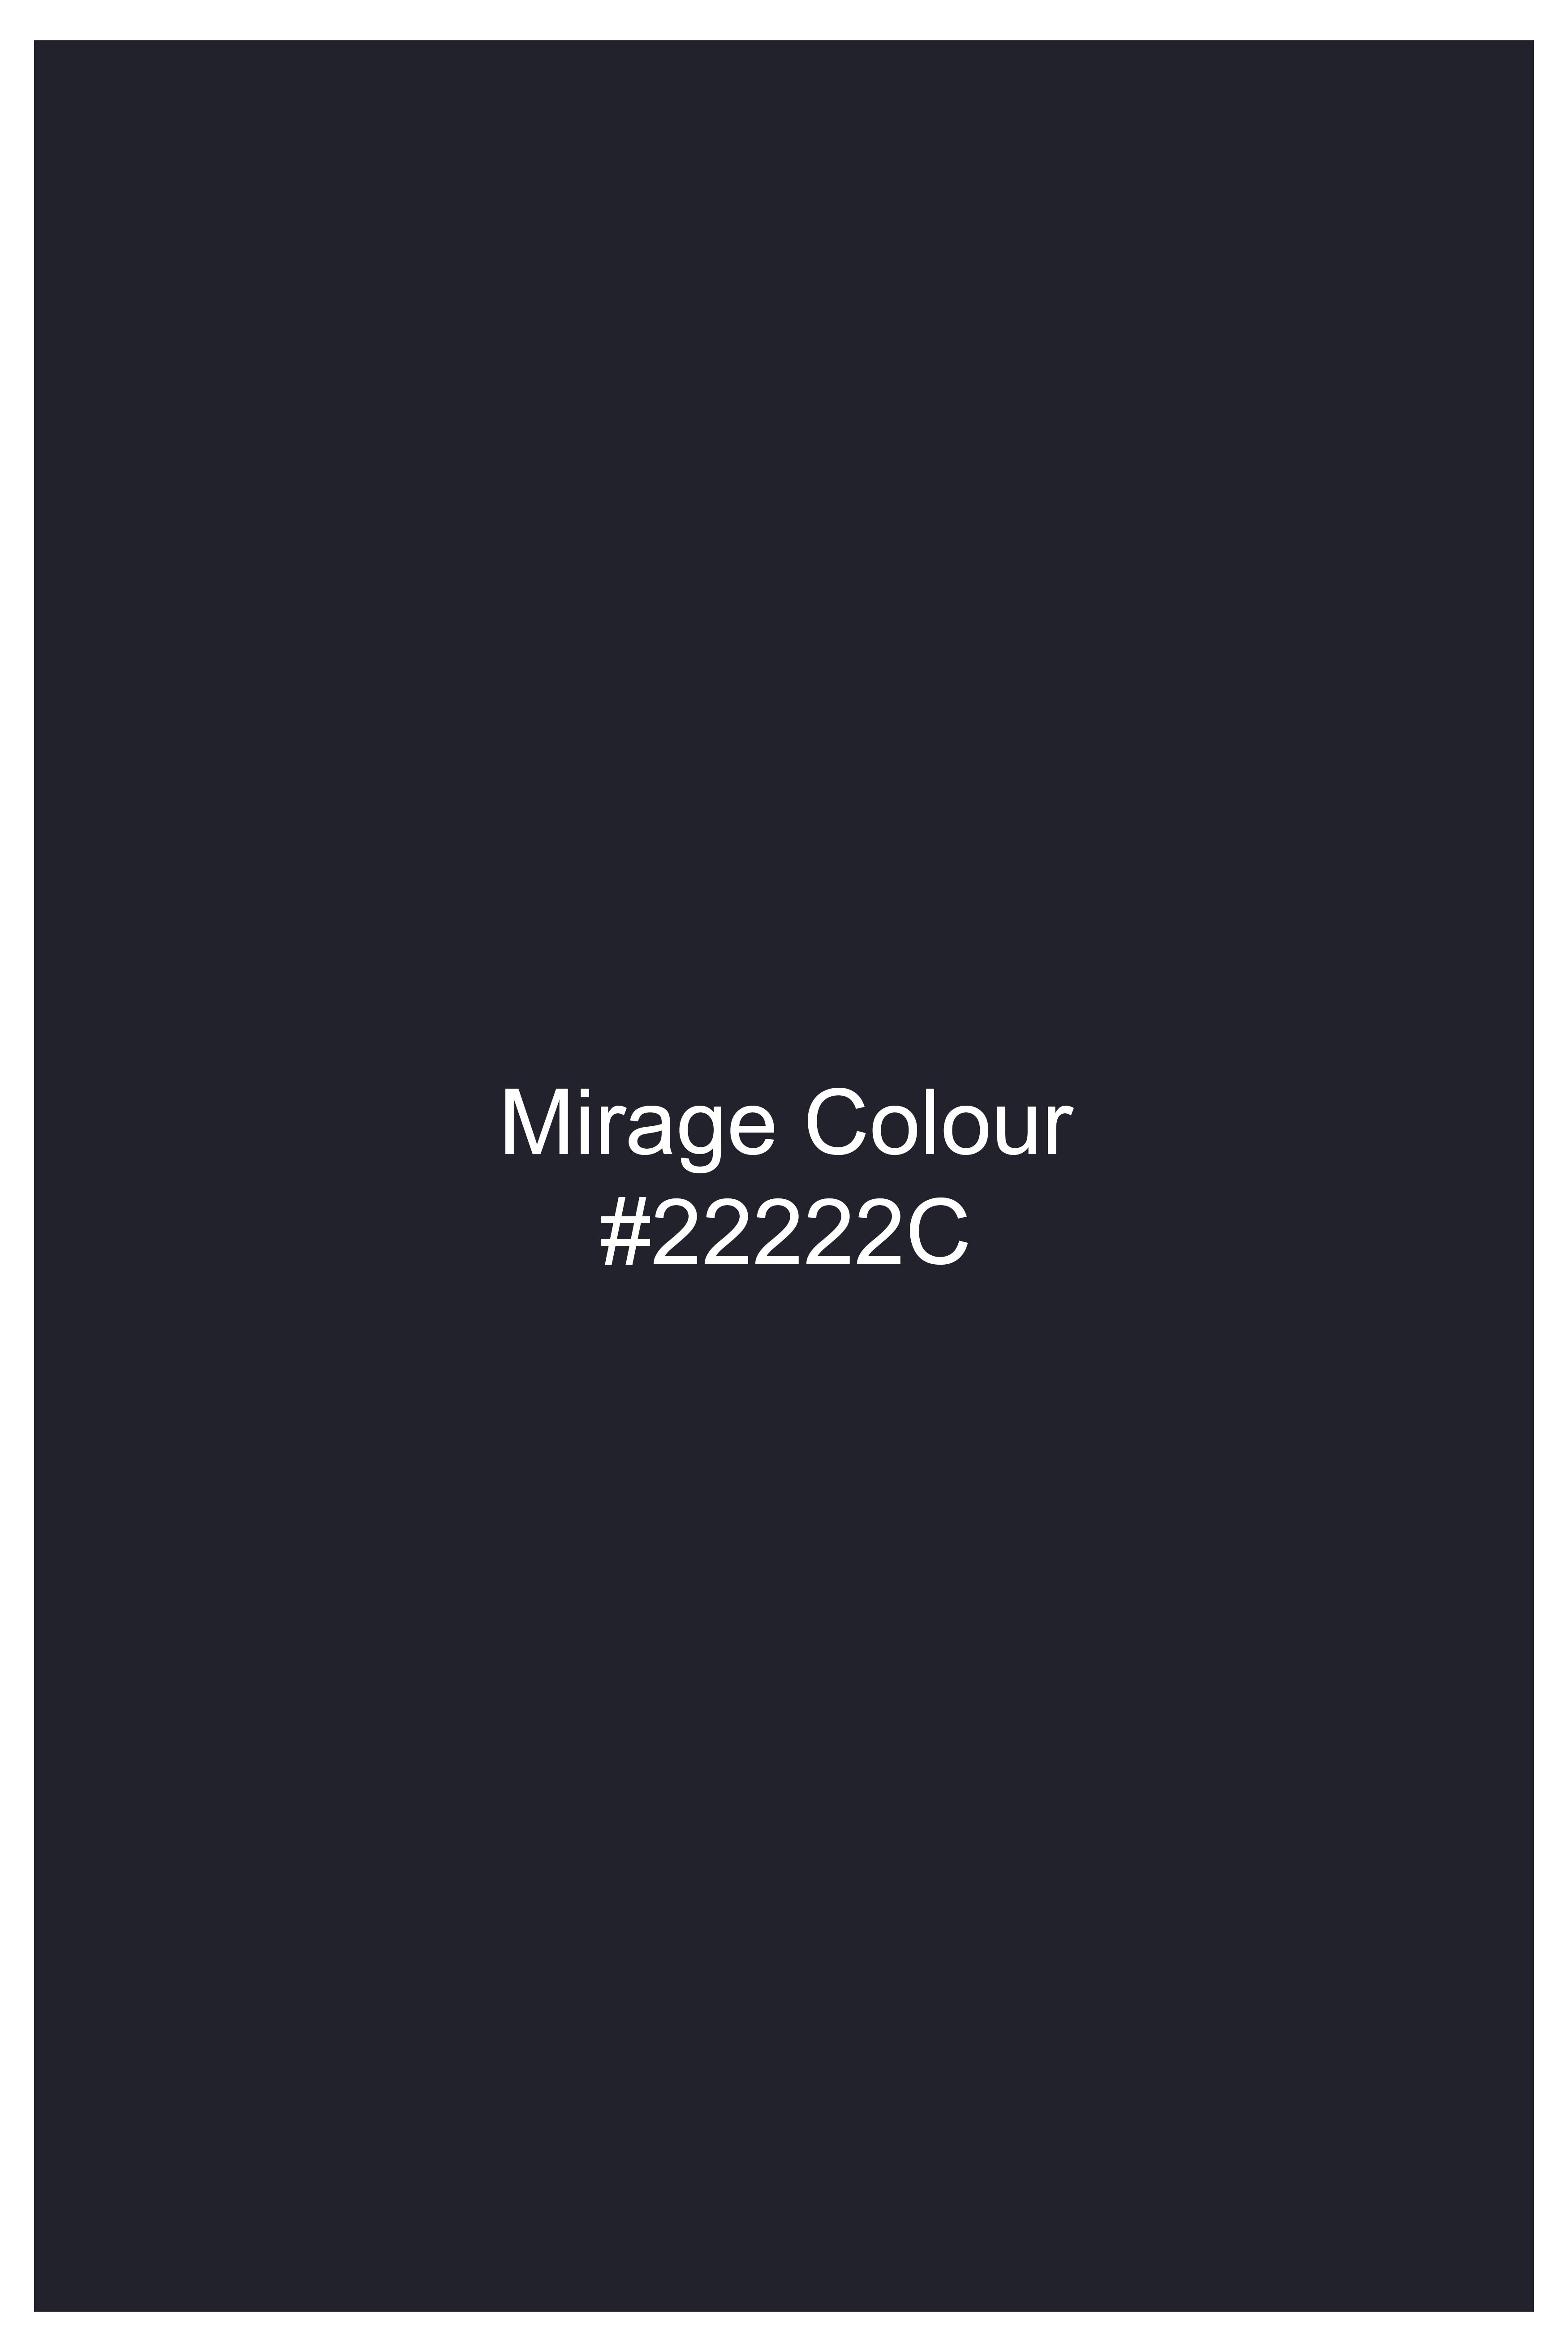 Mirage Blue Wool Rich Waistcoat V2736-36, V2736-38, V2736-40, V2736-42, V2736-44, V2736-46, V2736-48, V2736-50, V2736-52, V2736-54, V2736-56, V2736-58, V2736-60